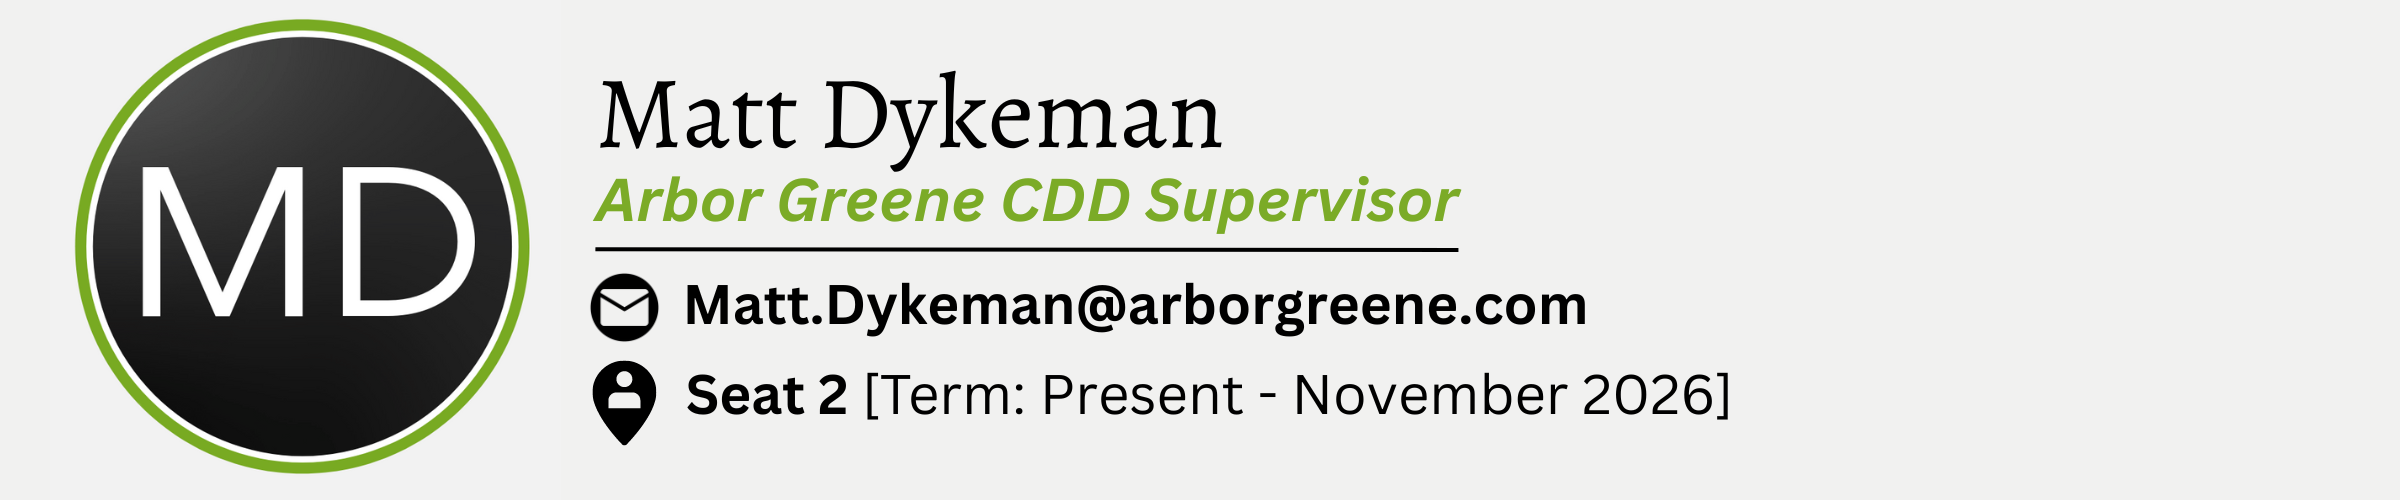 Matt Dykeman. Arbor Greene CDD Supervisor. E-Mail is Matt.Dykeman@arborgreene.com. Seat #2. Term from Present to November 2026.